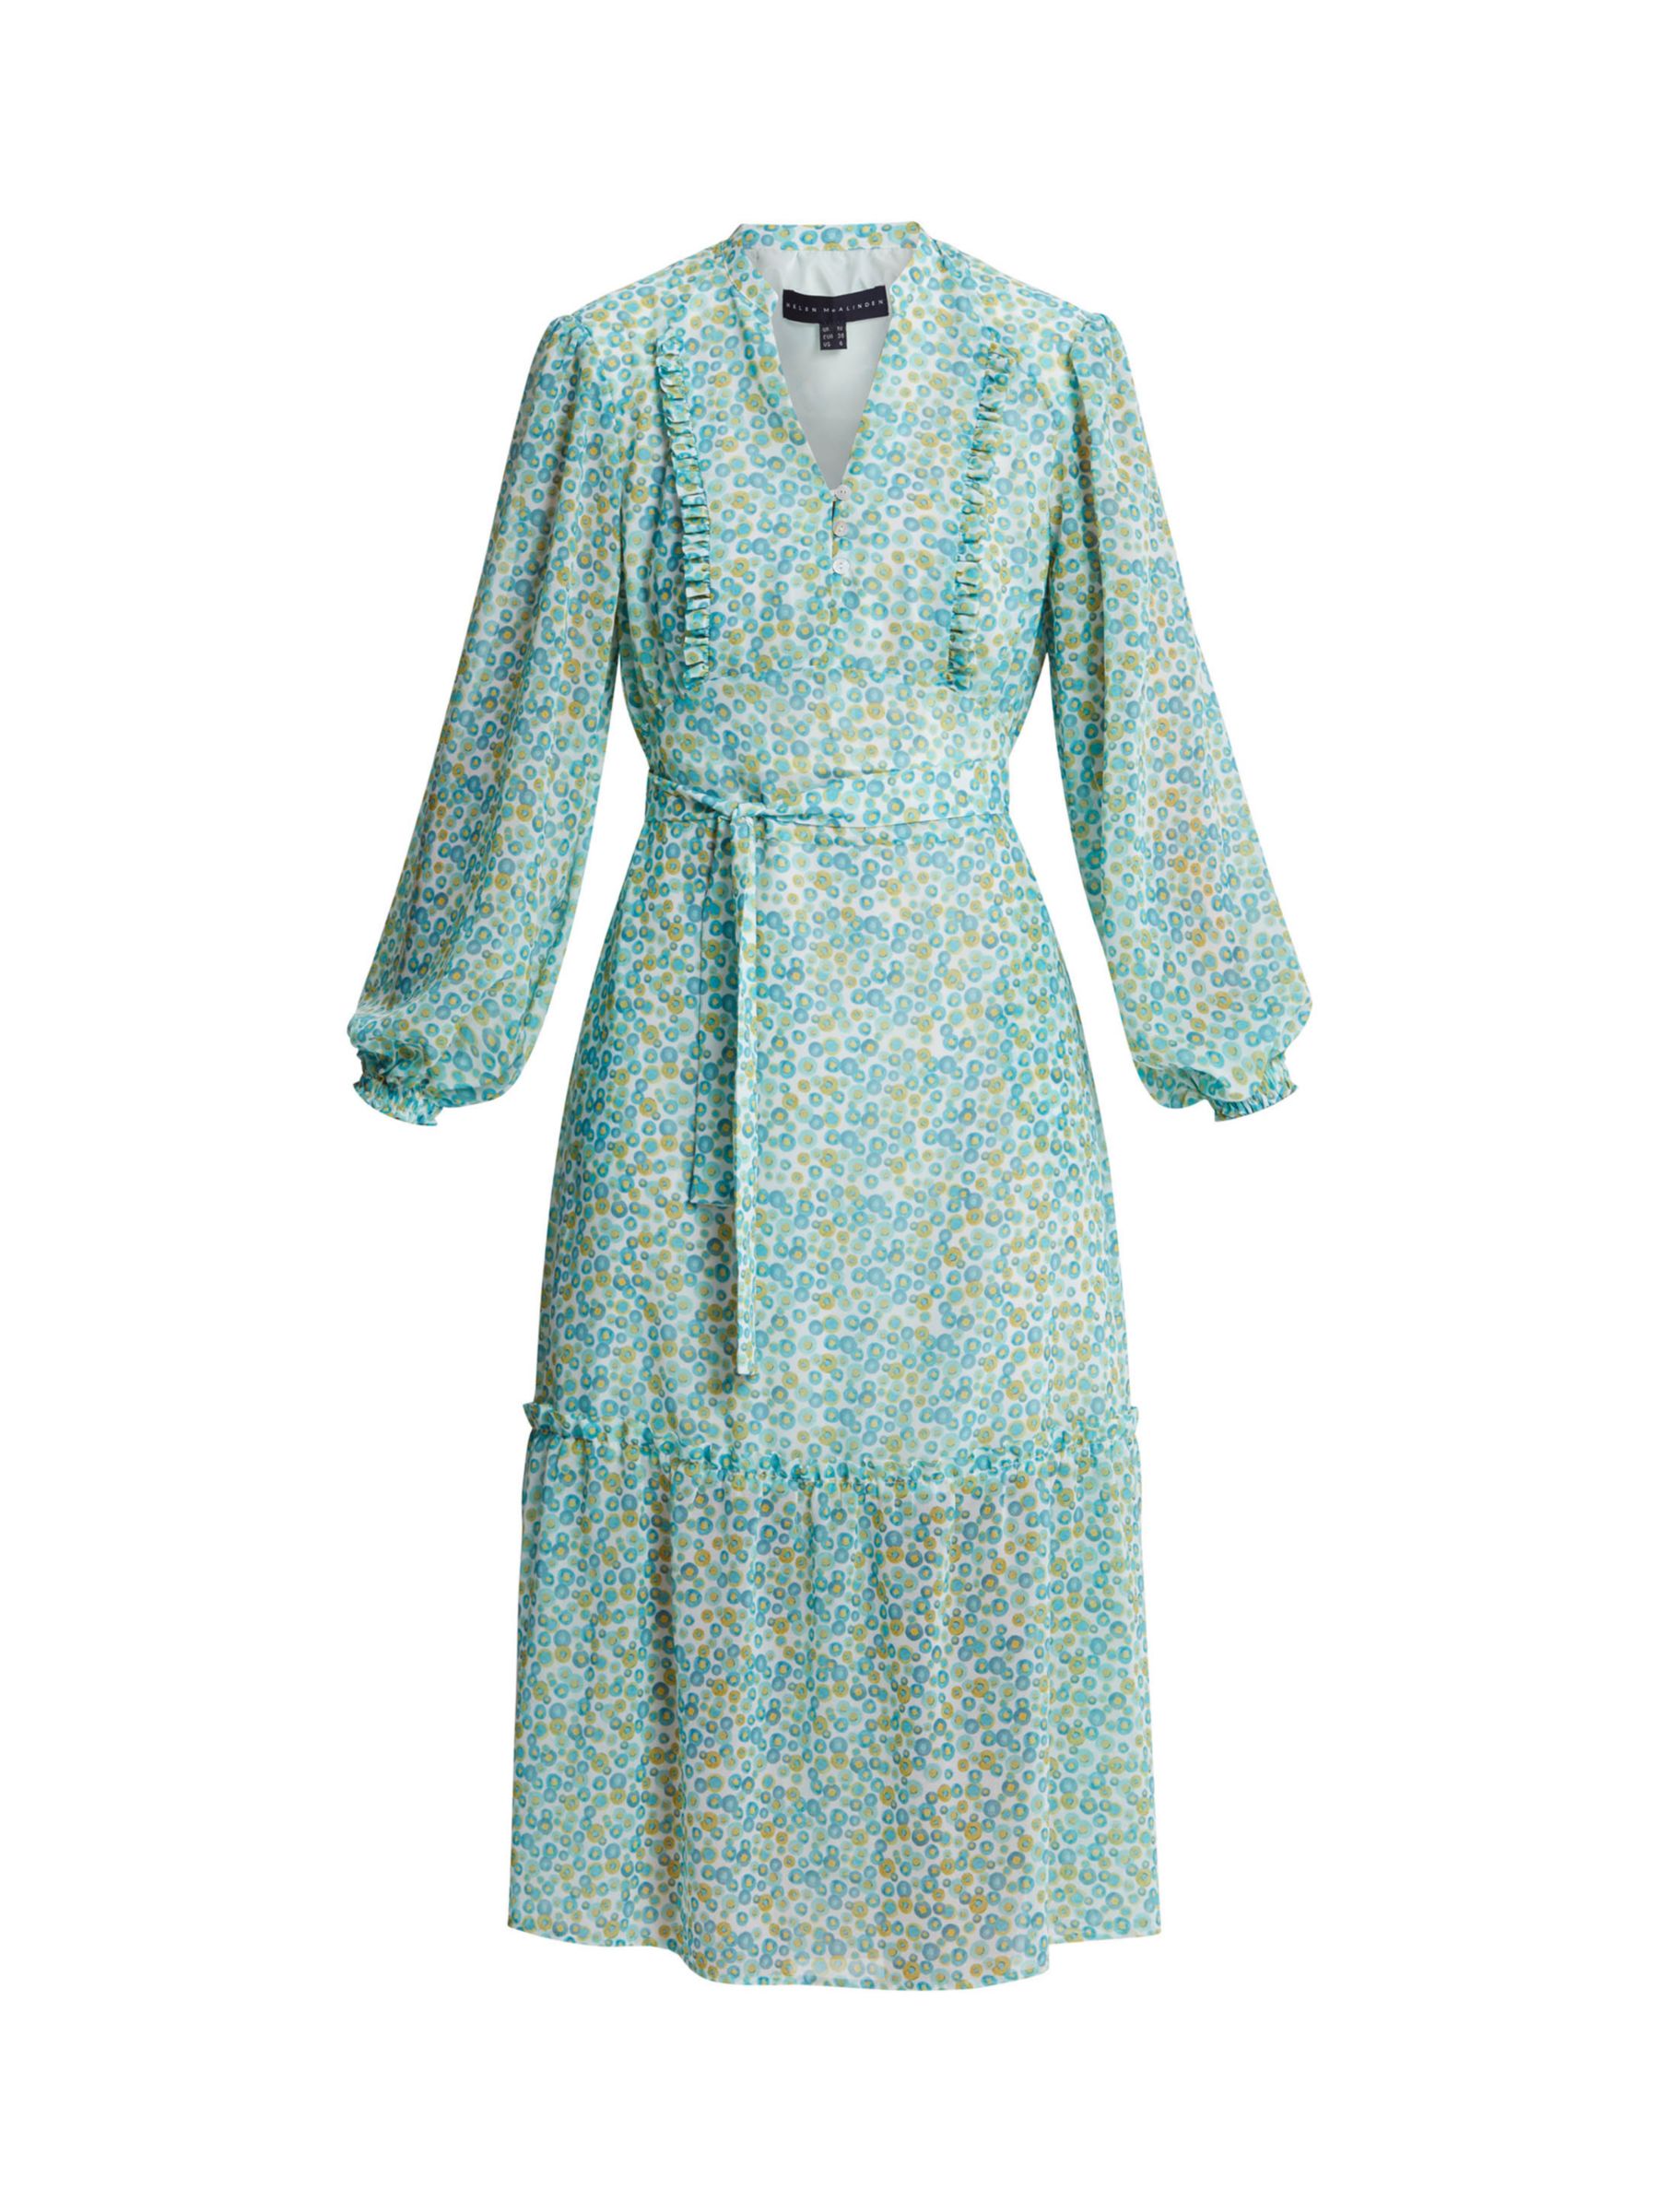 Helen McAlinden Bailey Smartie Print Dress, Multi, 8